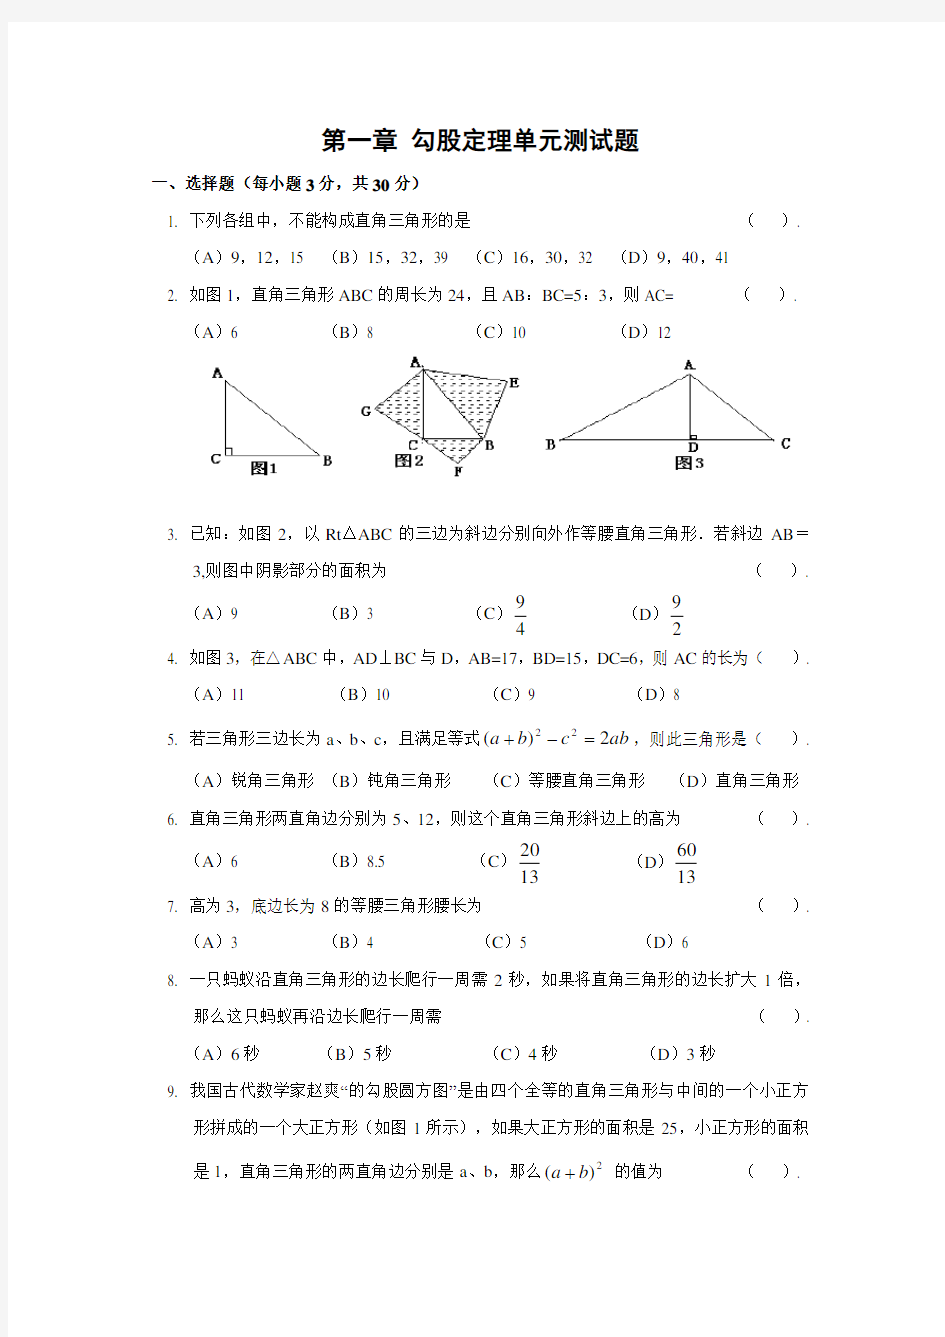 第一章勾股定理单元测试题(含答案)